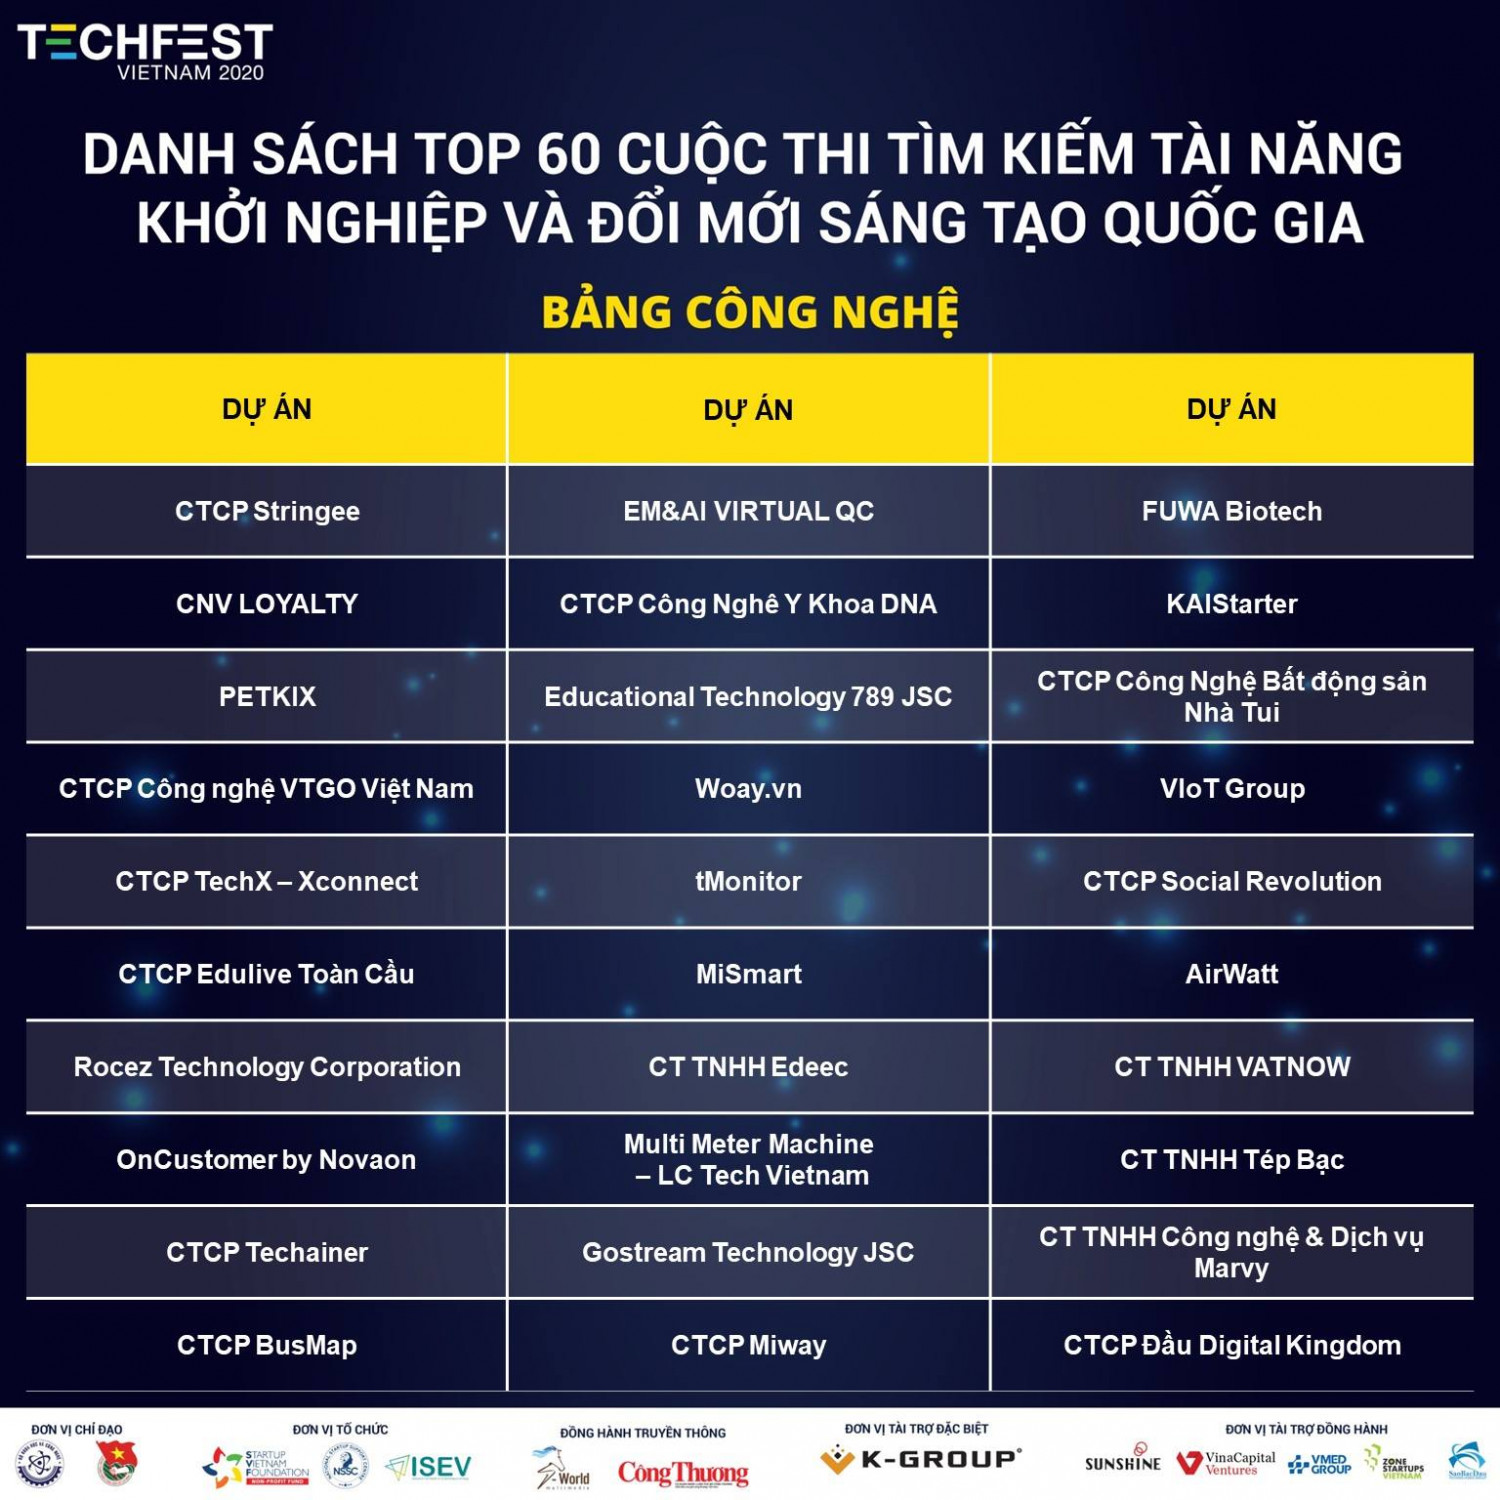 TOP60 Techfest 2020 - Bảng công nghệ